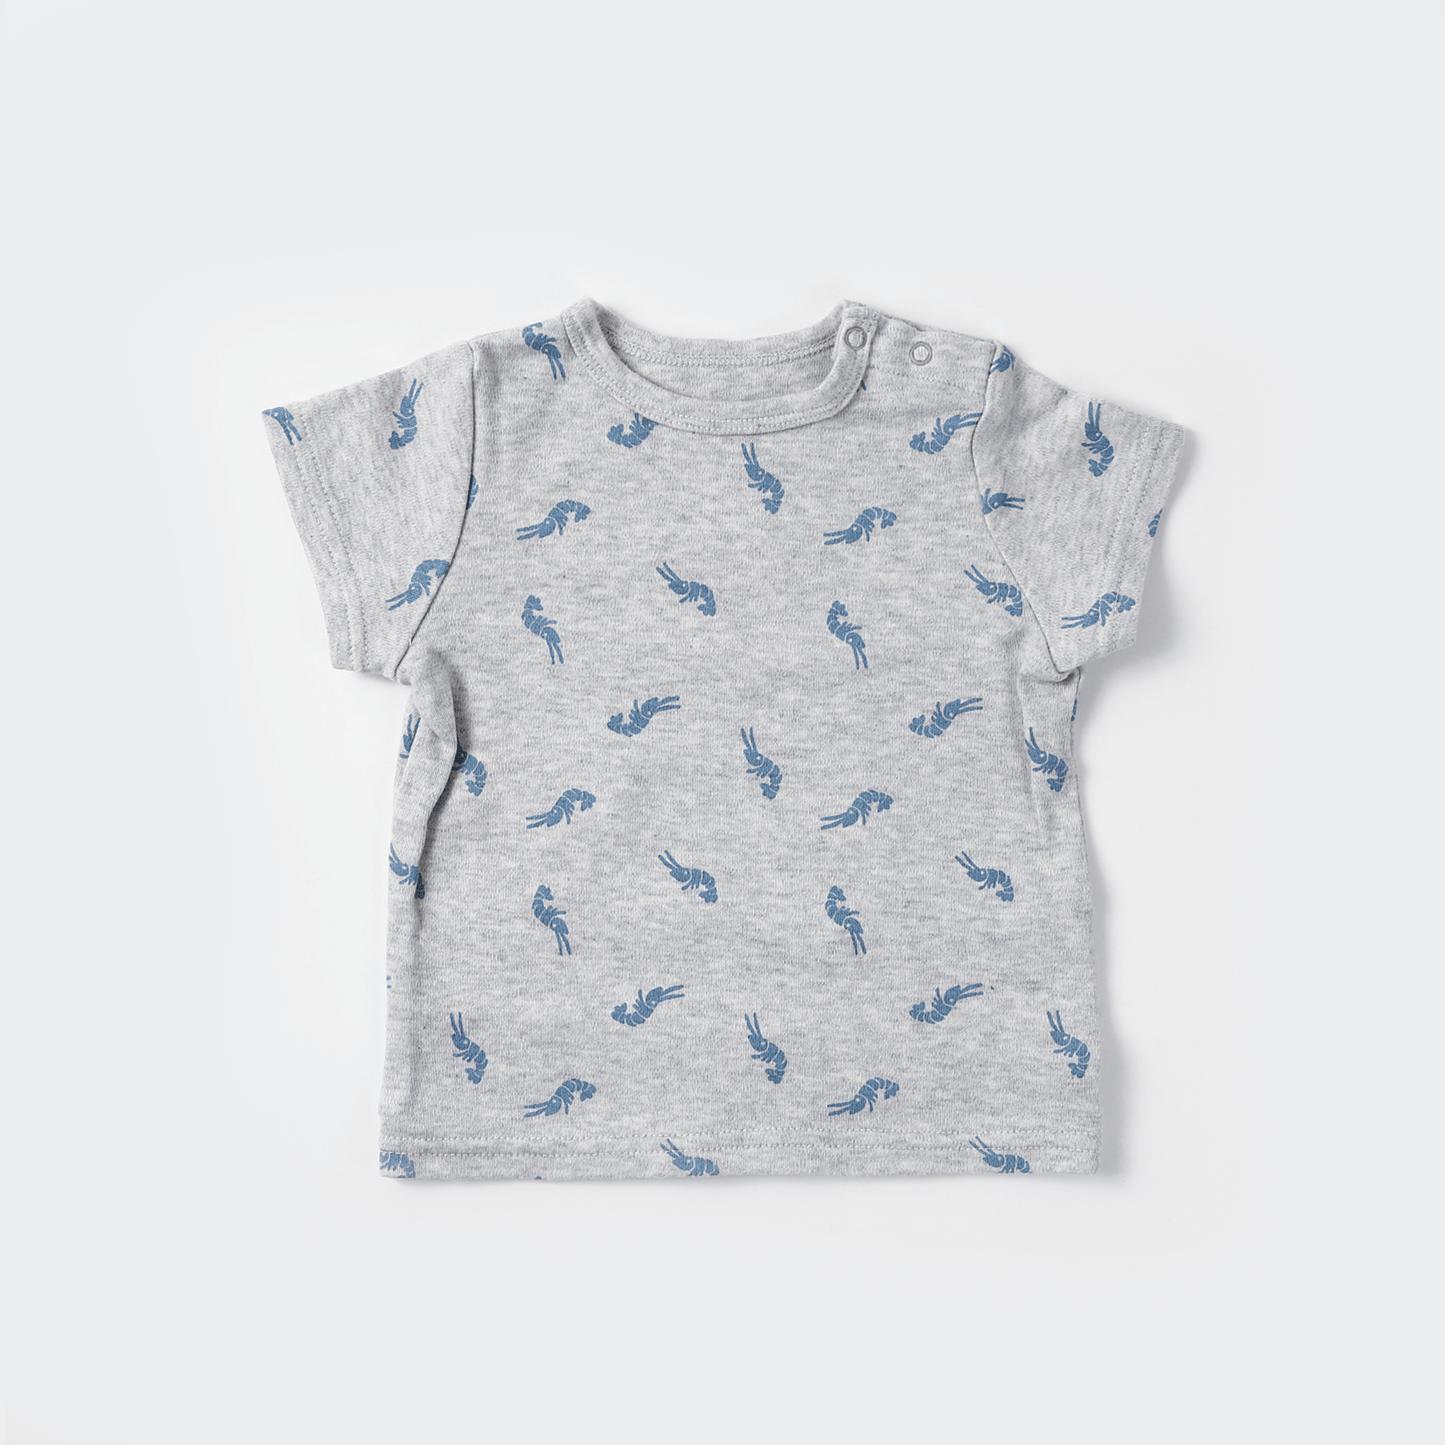 Shrimp tee shirt(blue)